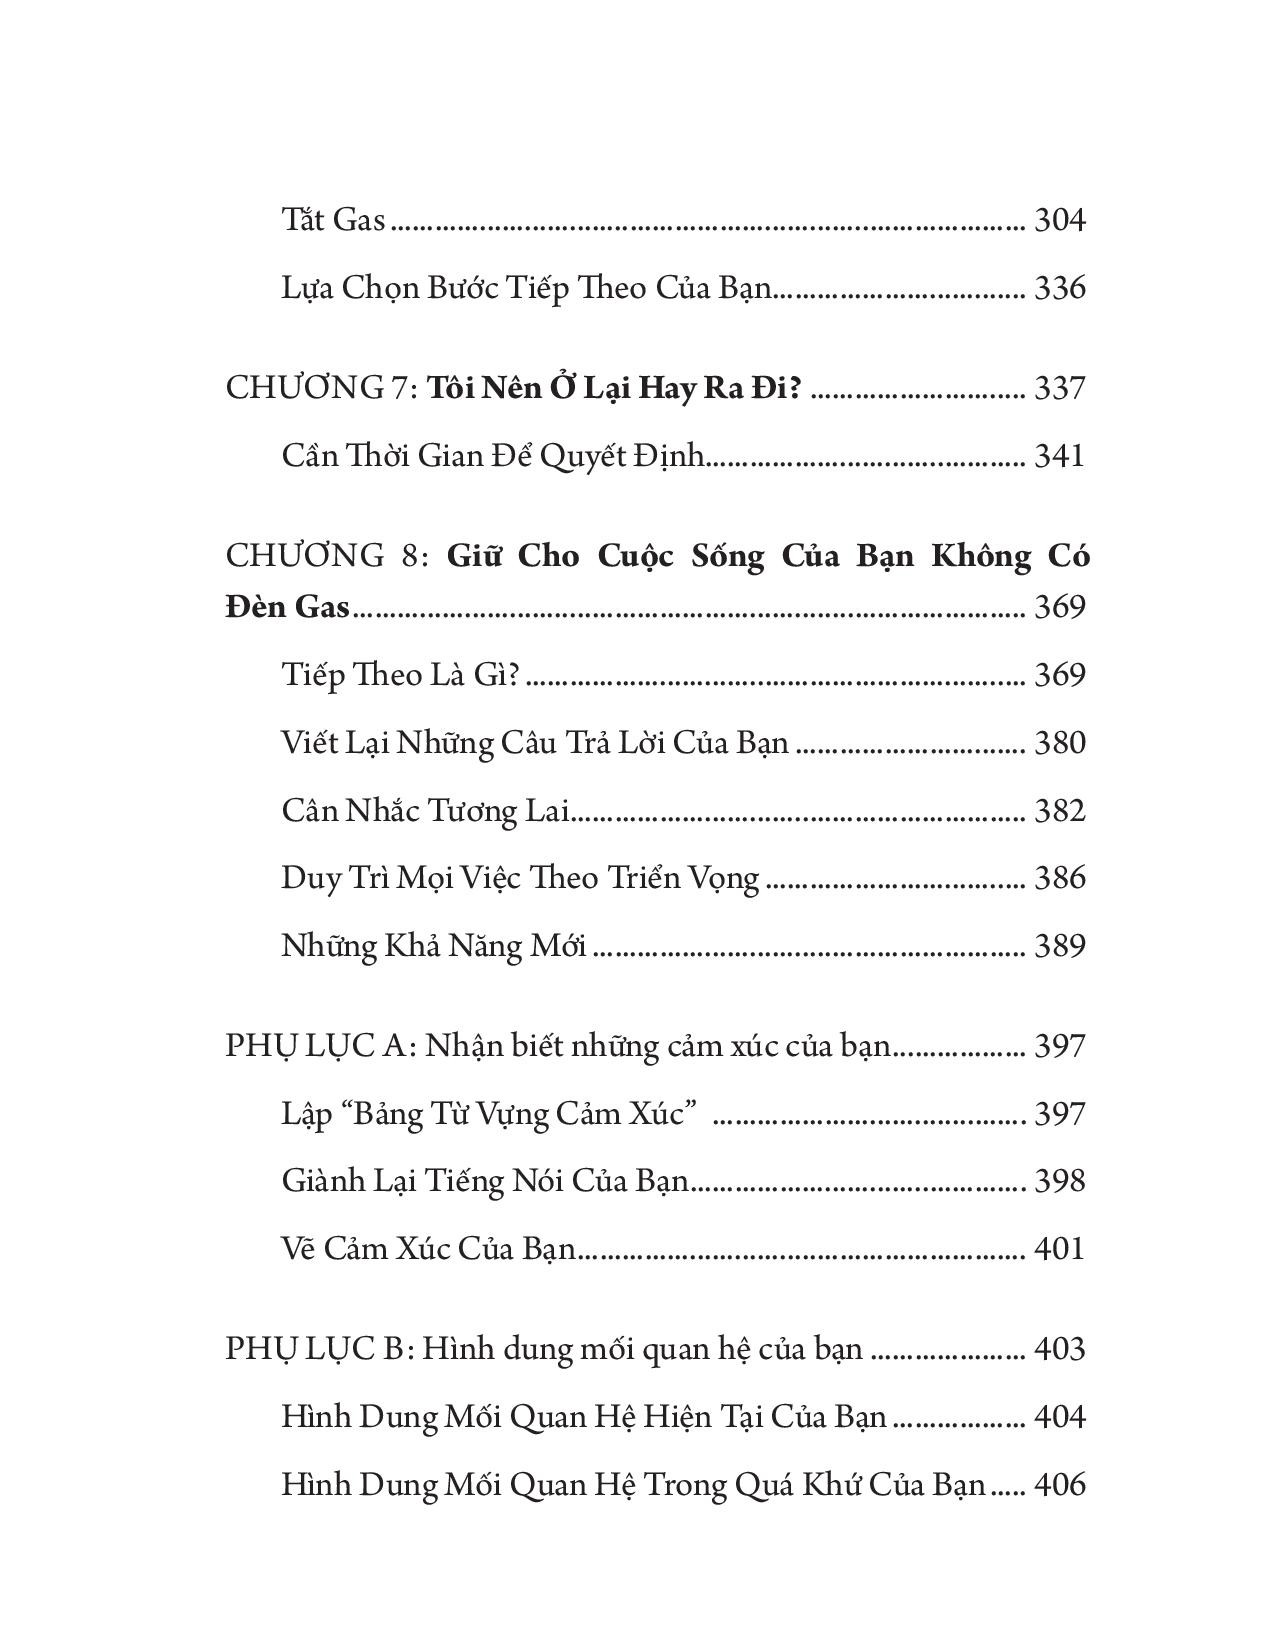 Bộ Sách Sống Sang Với Chiếc Vĩ Mỏng Hiệu Ứng Đèn Gas PDF